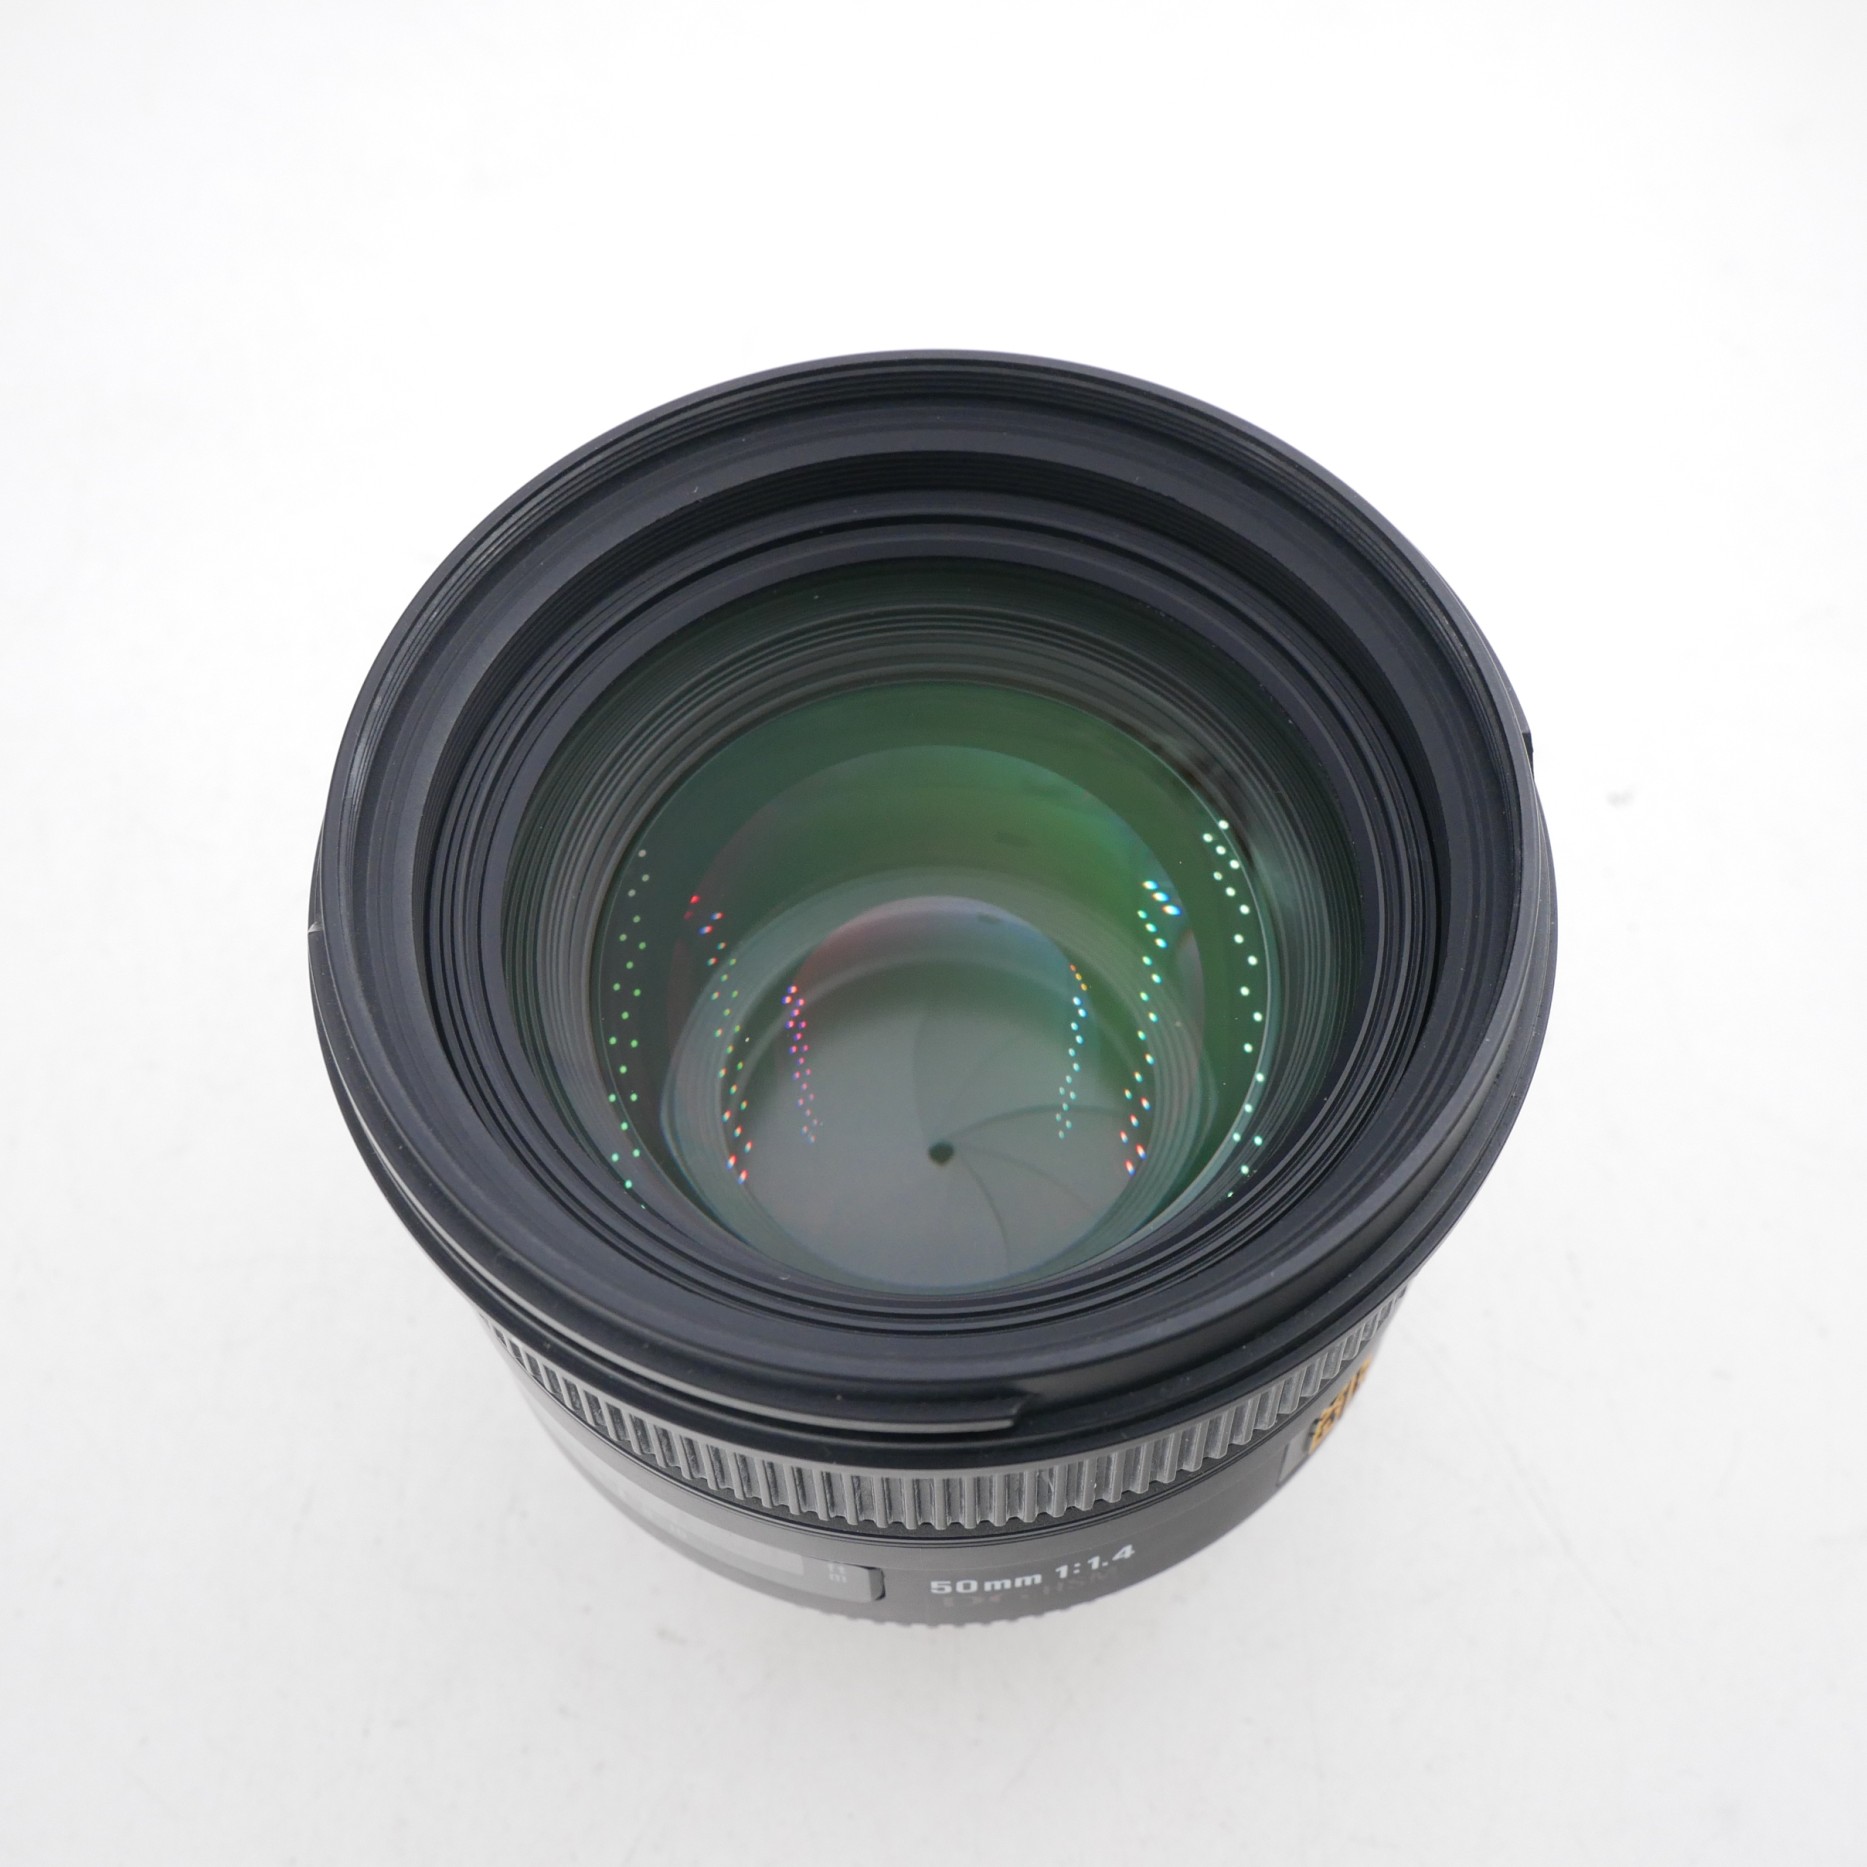 S-H-7TH659_2.jpg - Sigma AF 50mm F1.4 DG HSM Lens in Nikon FX Mount 